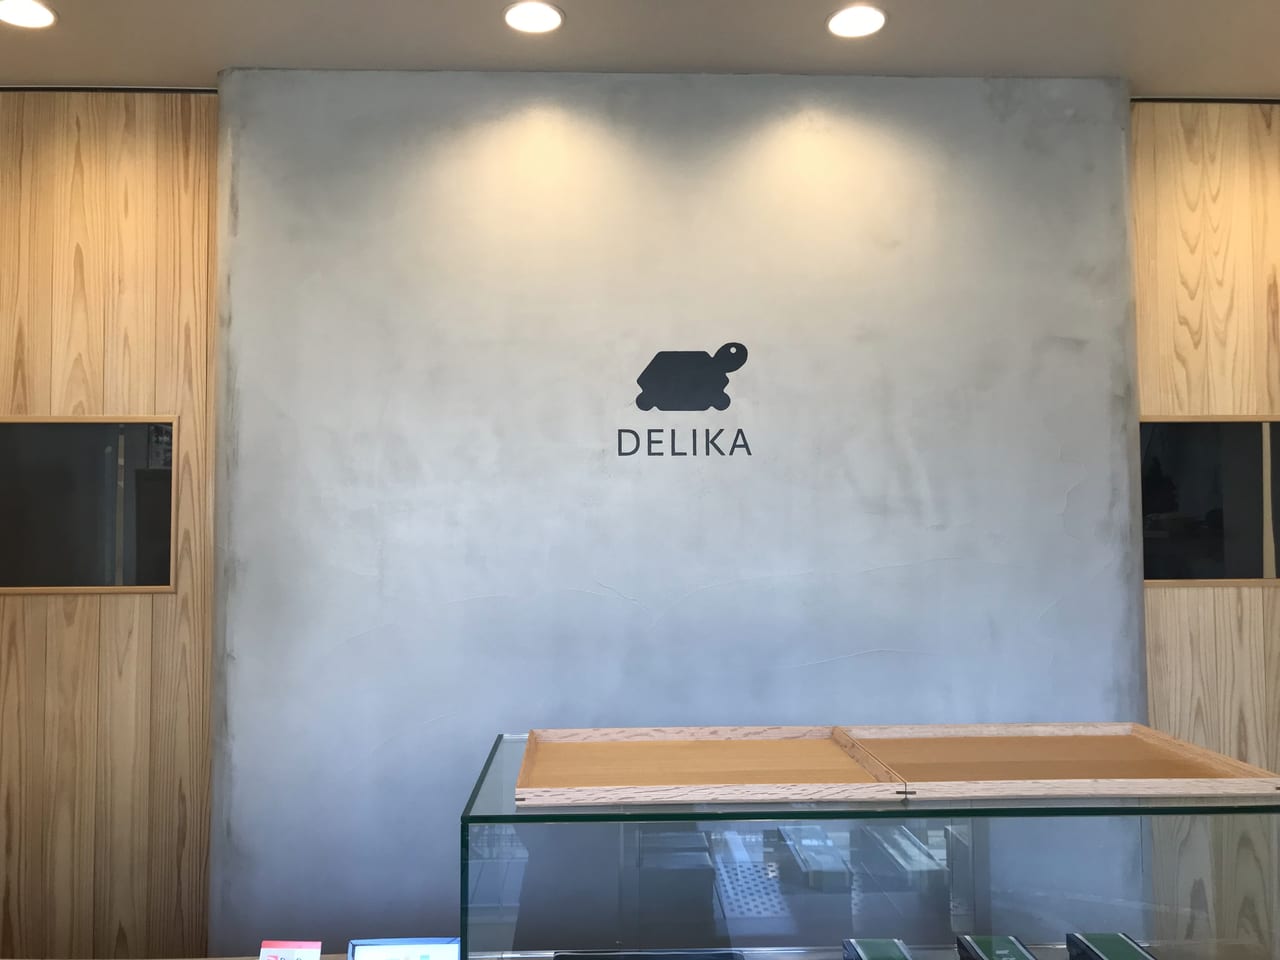 世田谷区等々力のあったら嬉しいデリ屋「DELIKA」は幅広い豊富なメニューがテイクアウトできます。